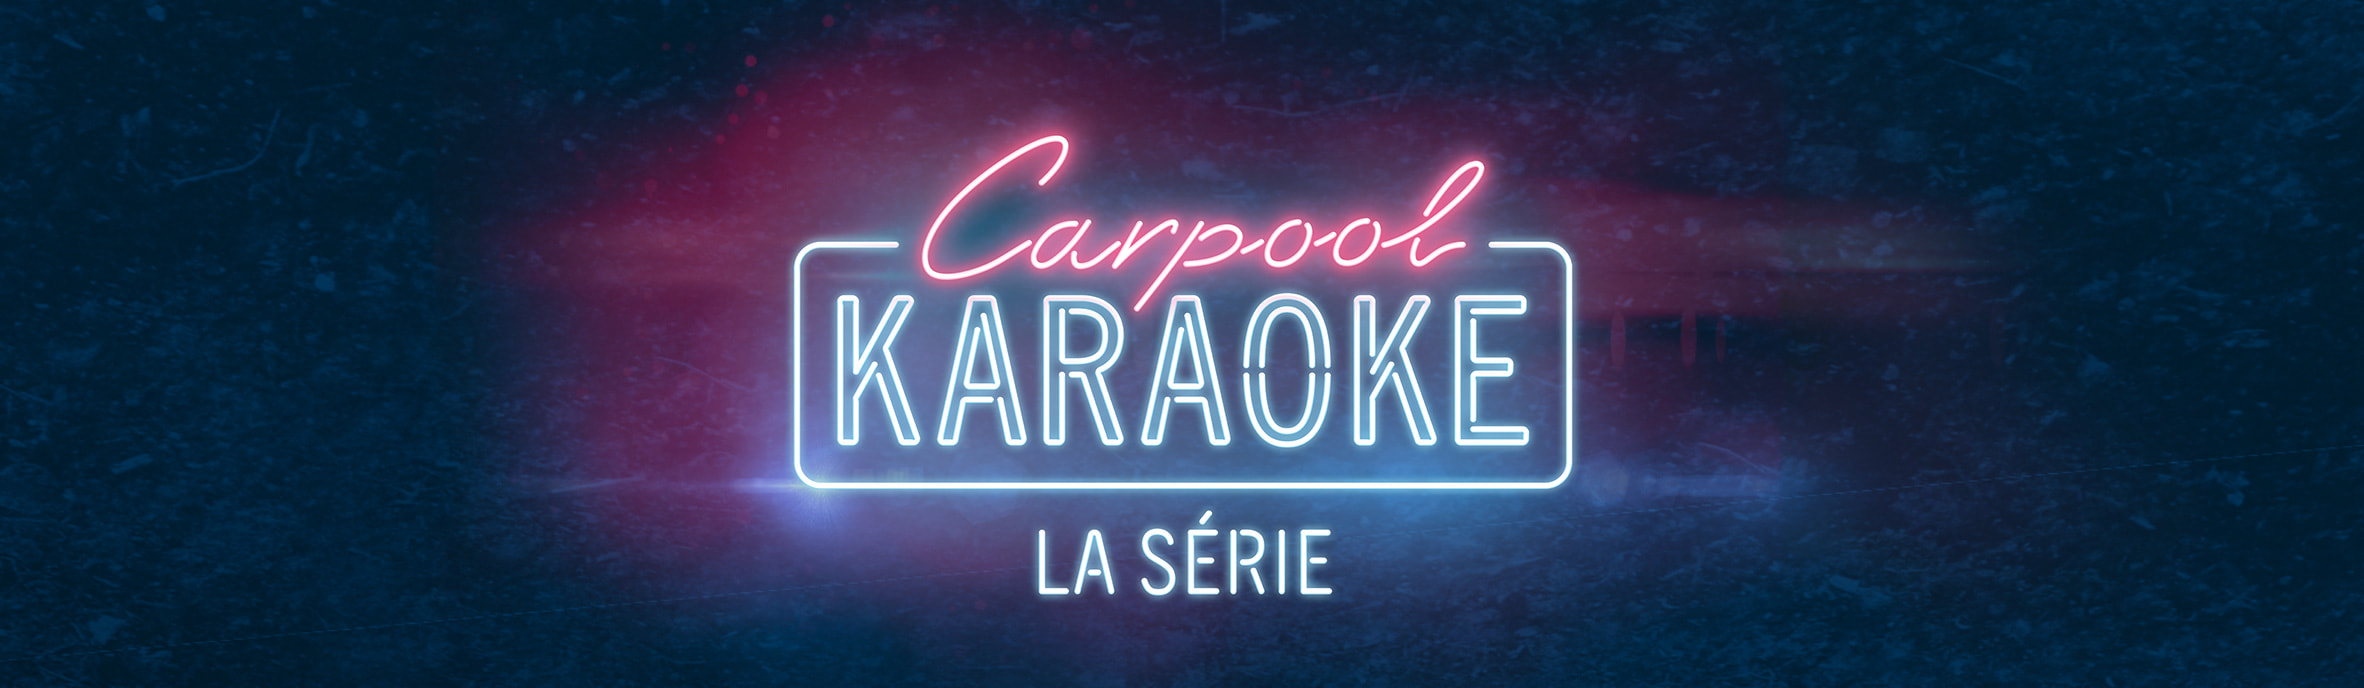 Le 1er invité du Carpool Karaoke français dévoilé